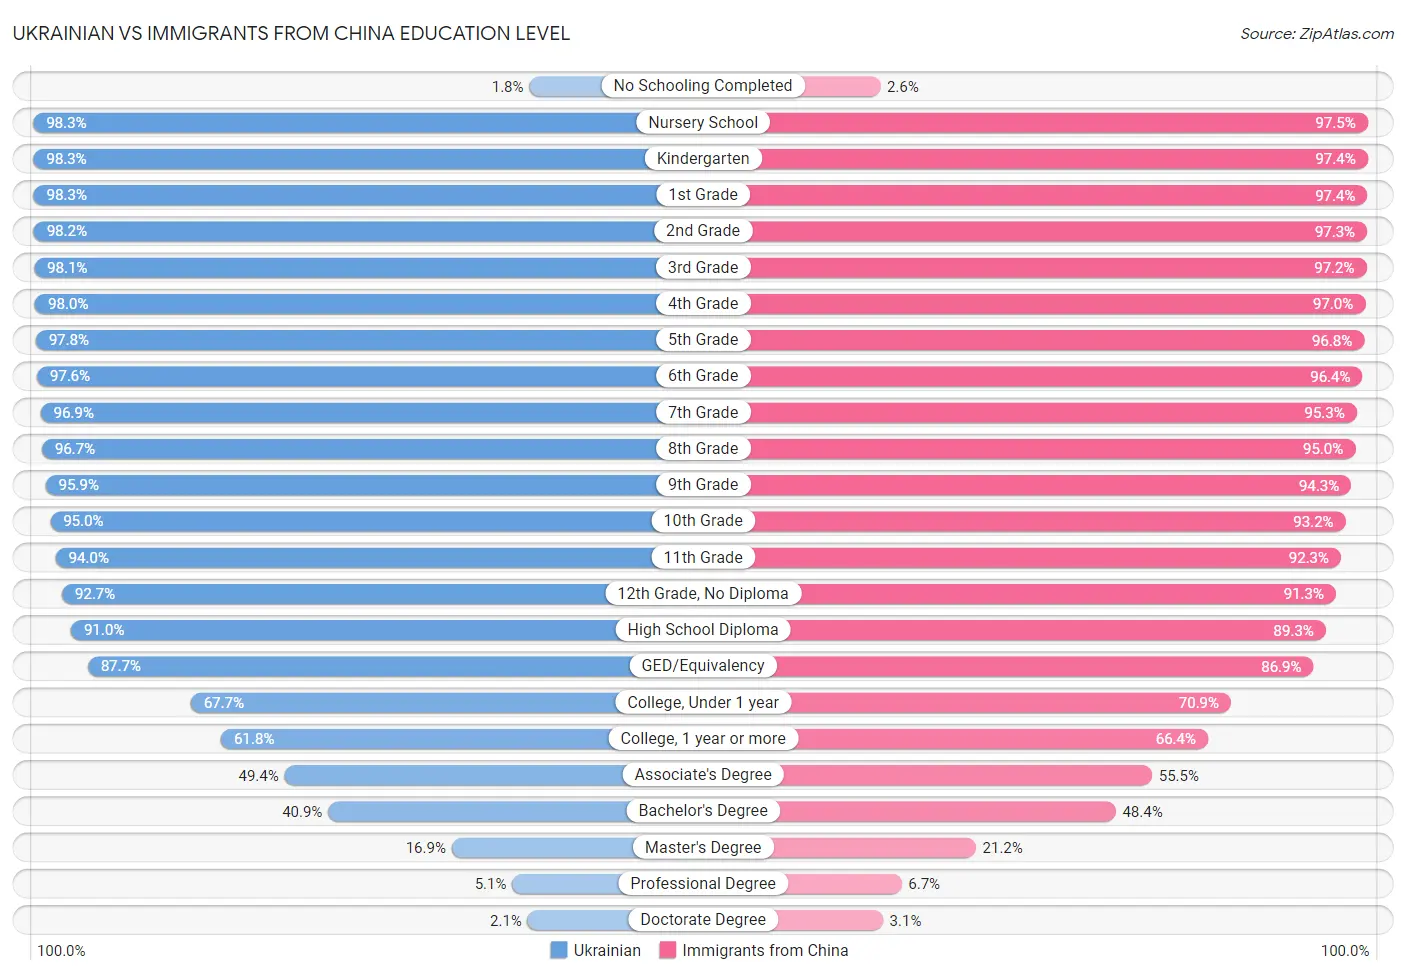 Ukrainian vs Immigrants from China Education Level